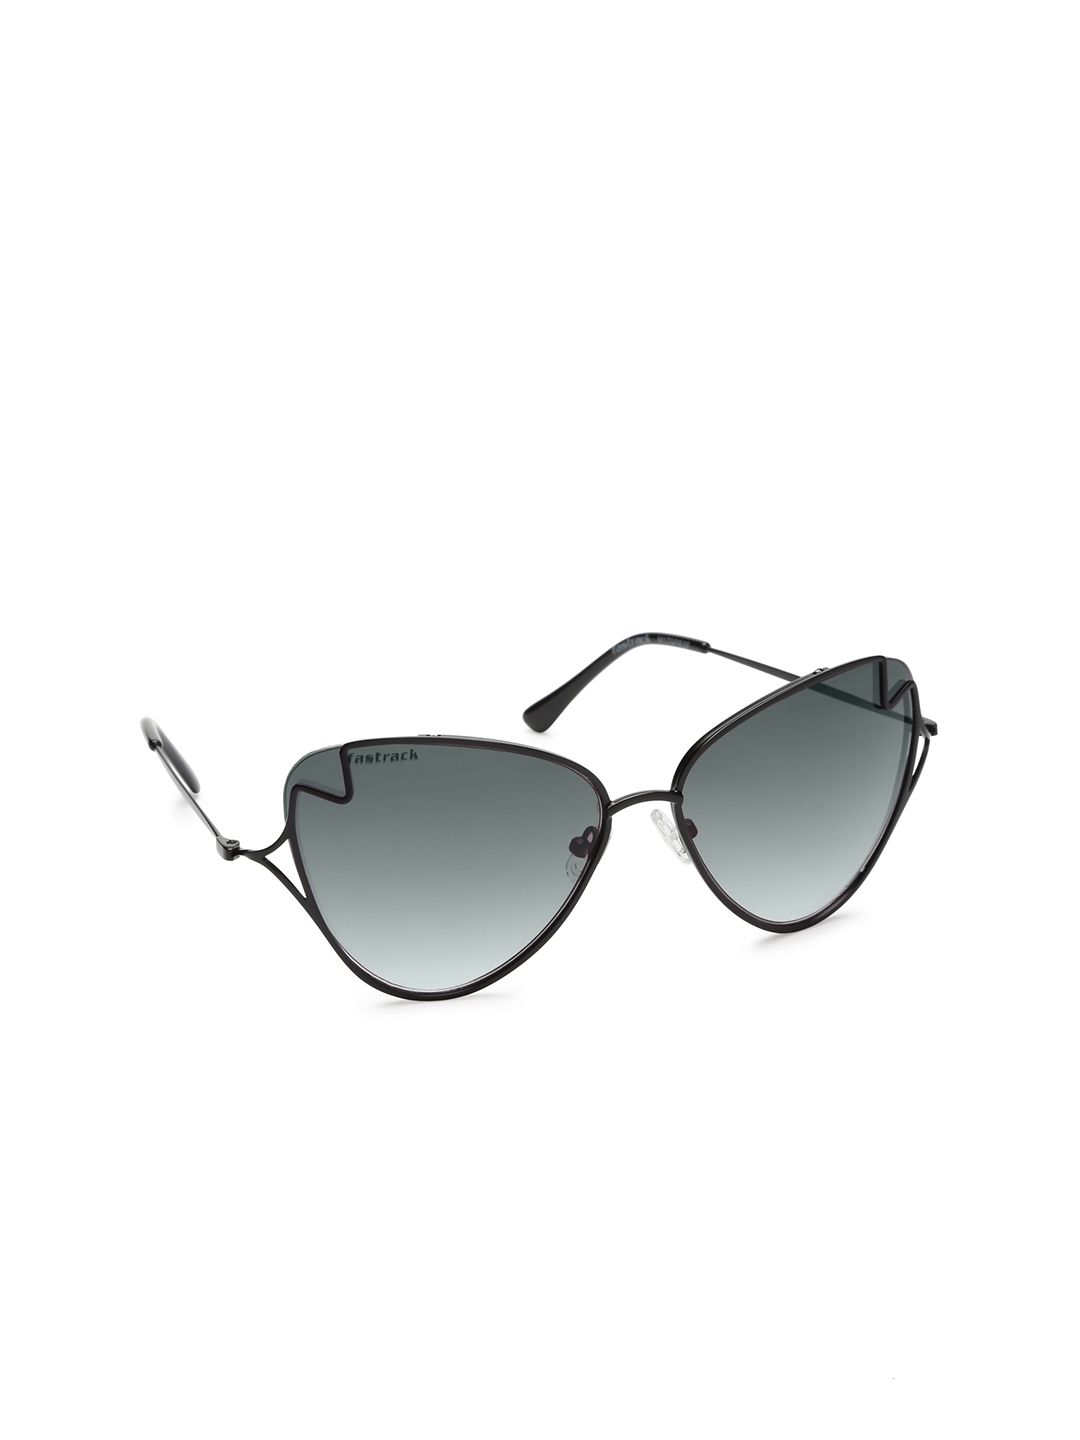 Fastrack Women Oval Sunglasses M179PR2F Price in India